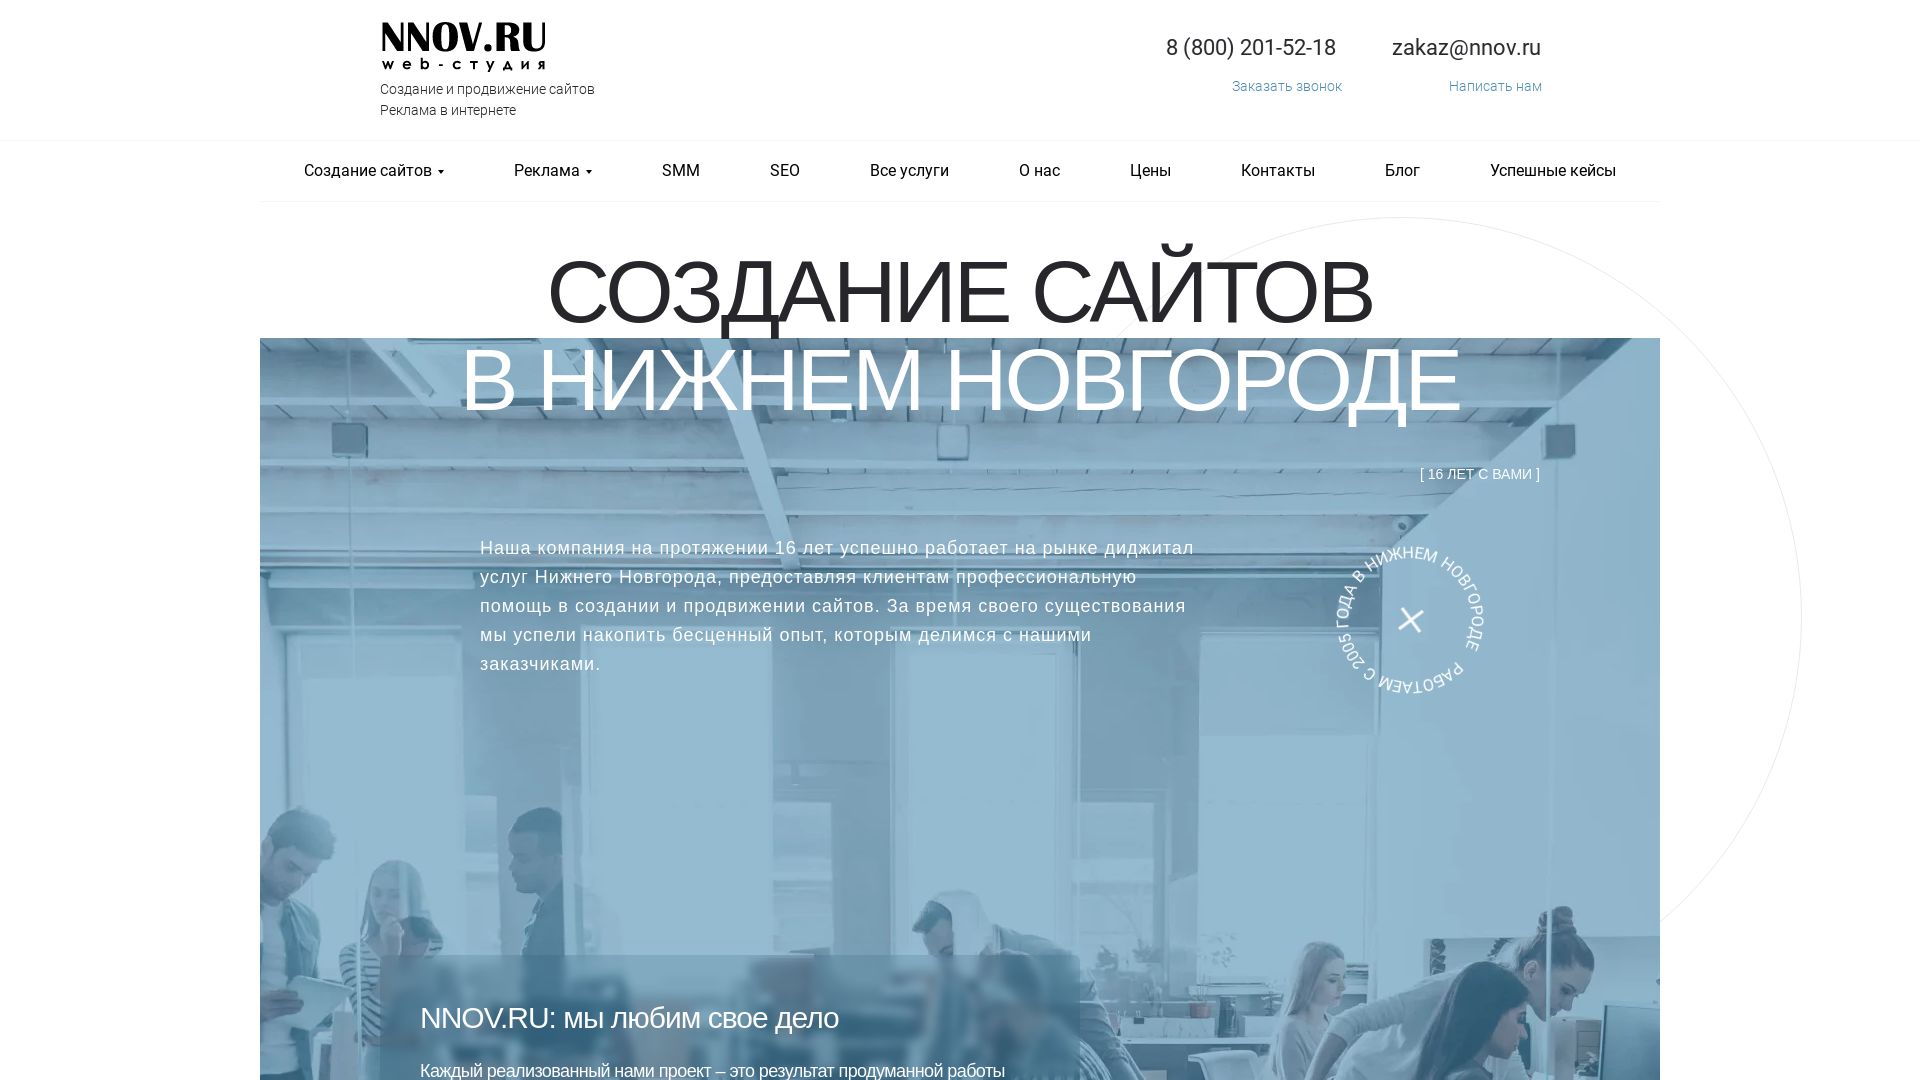 网站状态 nnov.ru 是  在线的